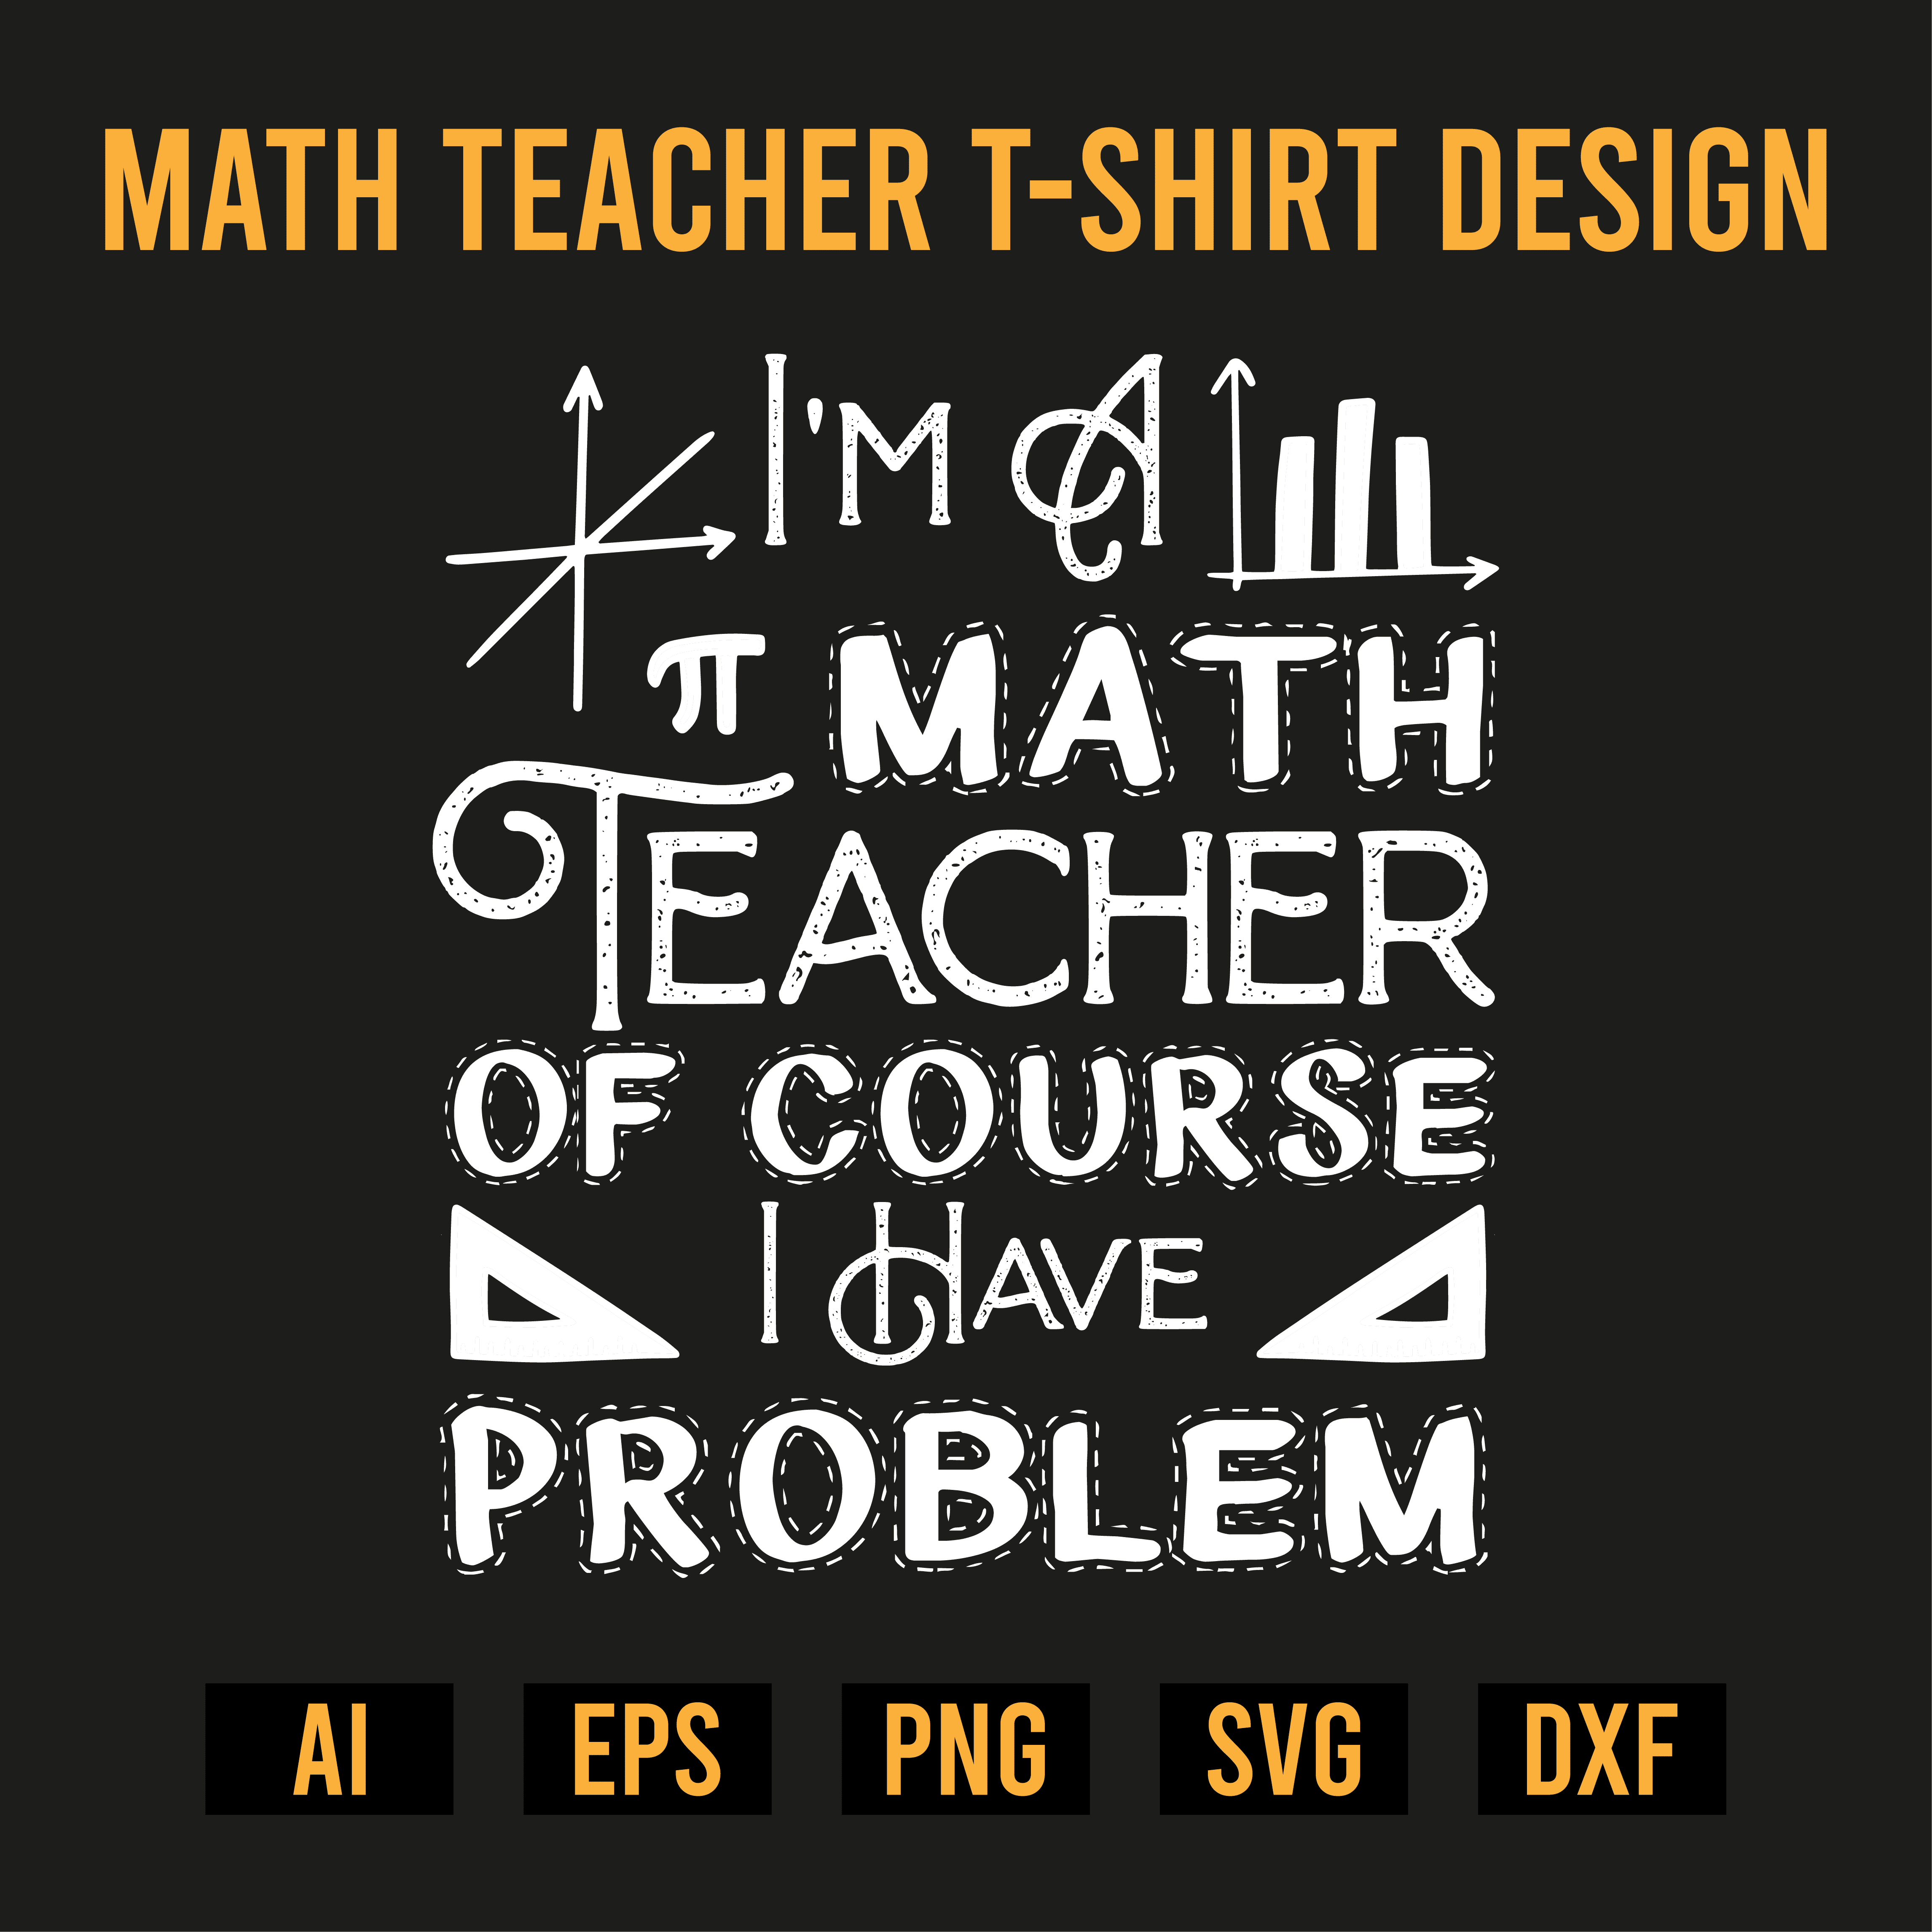 Math Teacher T-Shirt Design cover image.